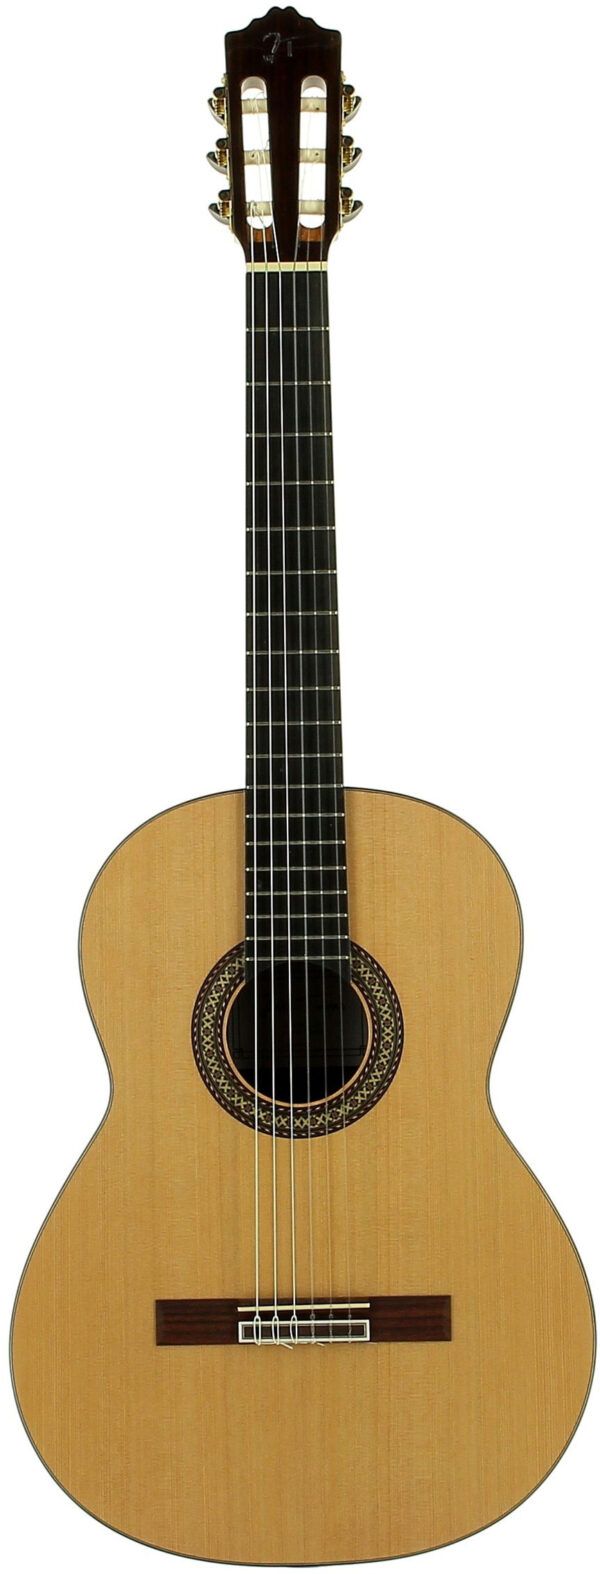 GUITARRA CLÁSICA 4/4 Guitarra clásica fabricada en España.  Tapa maciza de cedro. Aros y fondo de palosanto de la India.  Mástil de cedro. Diapasón de ébano. Puente de palosanto. Clavijero dorado. Acabado brillante.